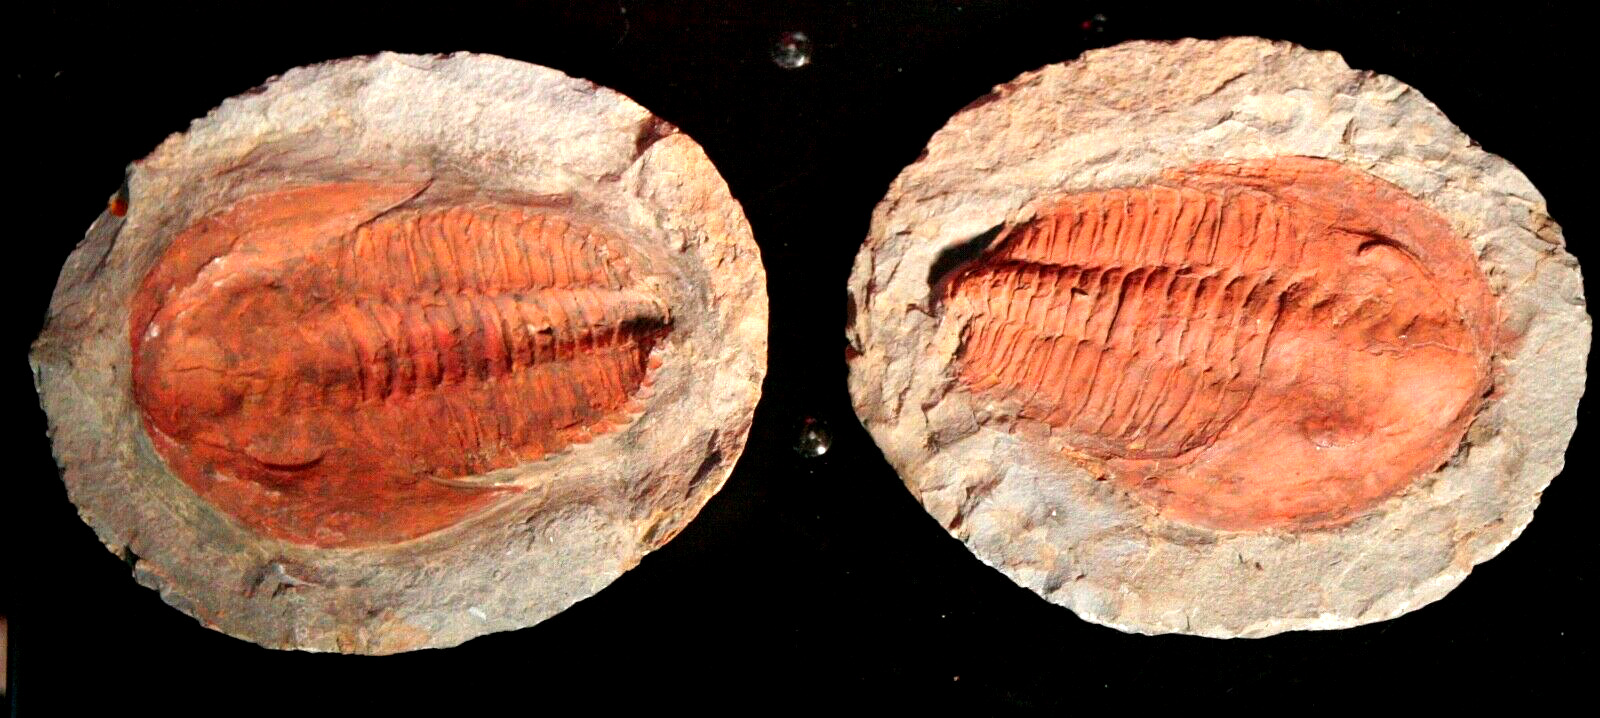 Trilobite - Split Pair Fossil of the Trilobite Cambropallas Telesto 6” x 7”